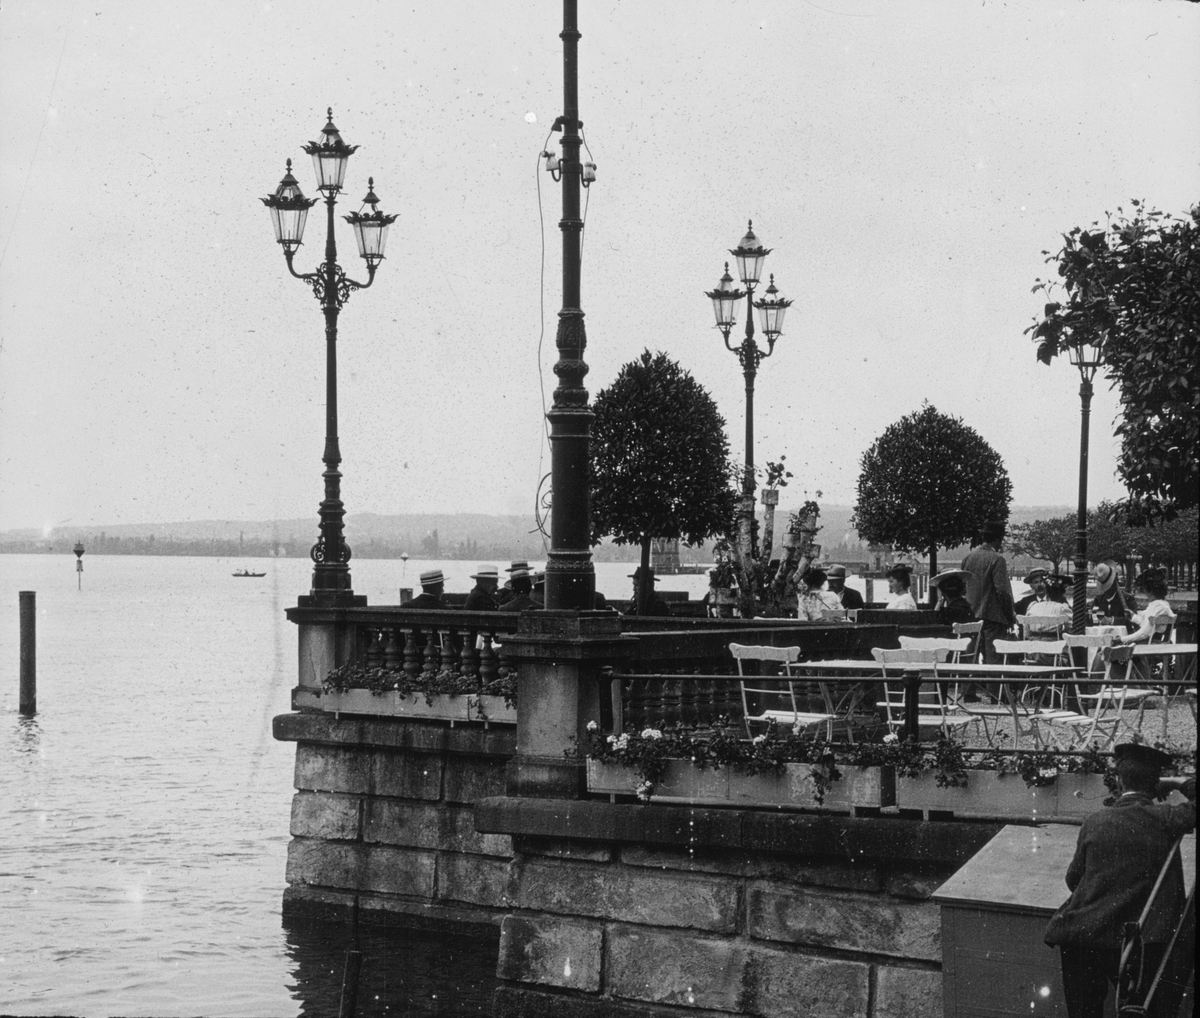 Skioptikonbild med motiv från Konstanz. Uteservering vid Bodensjön.
Bilden har förvarats i kartong märkt: Resan 1906. Arlberg- banan 2. Konstanz 6.